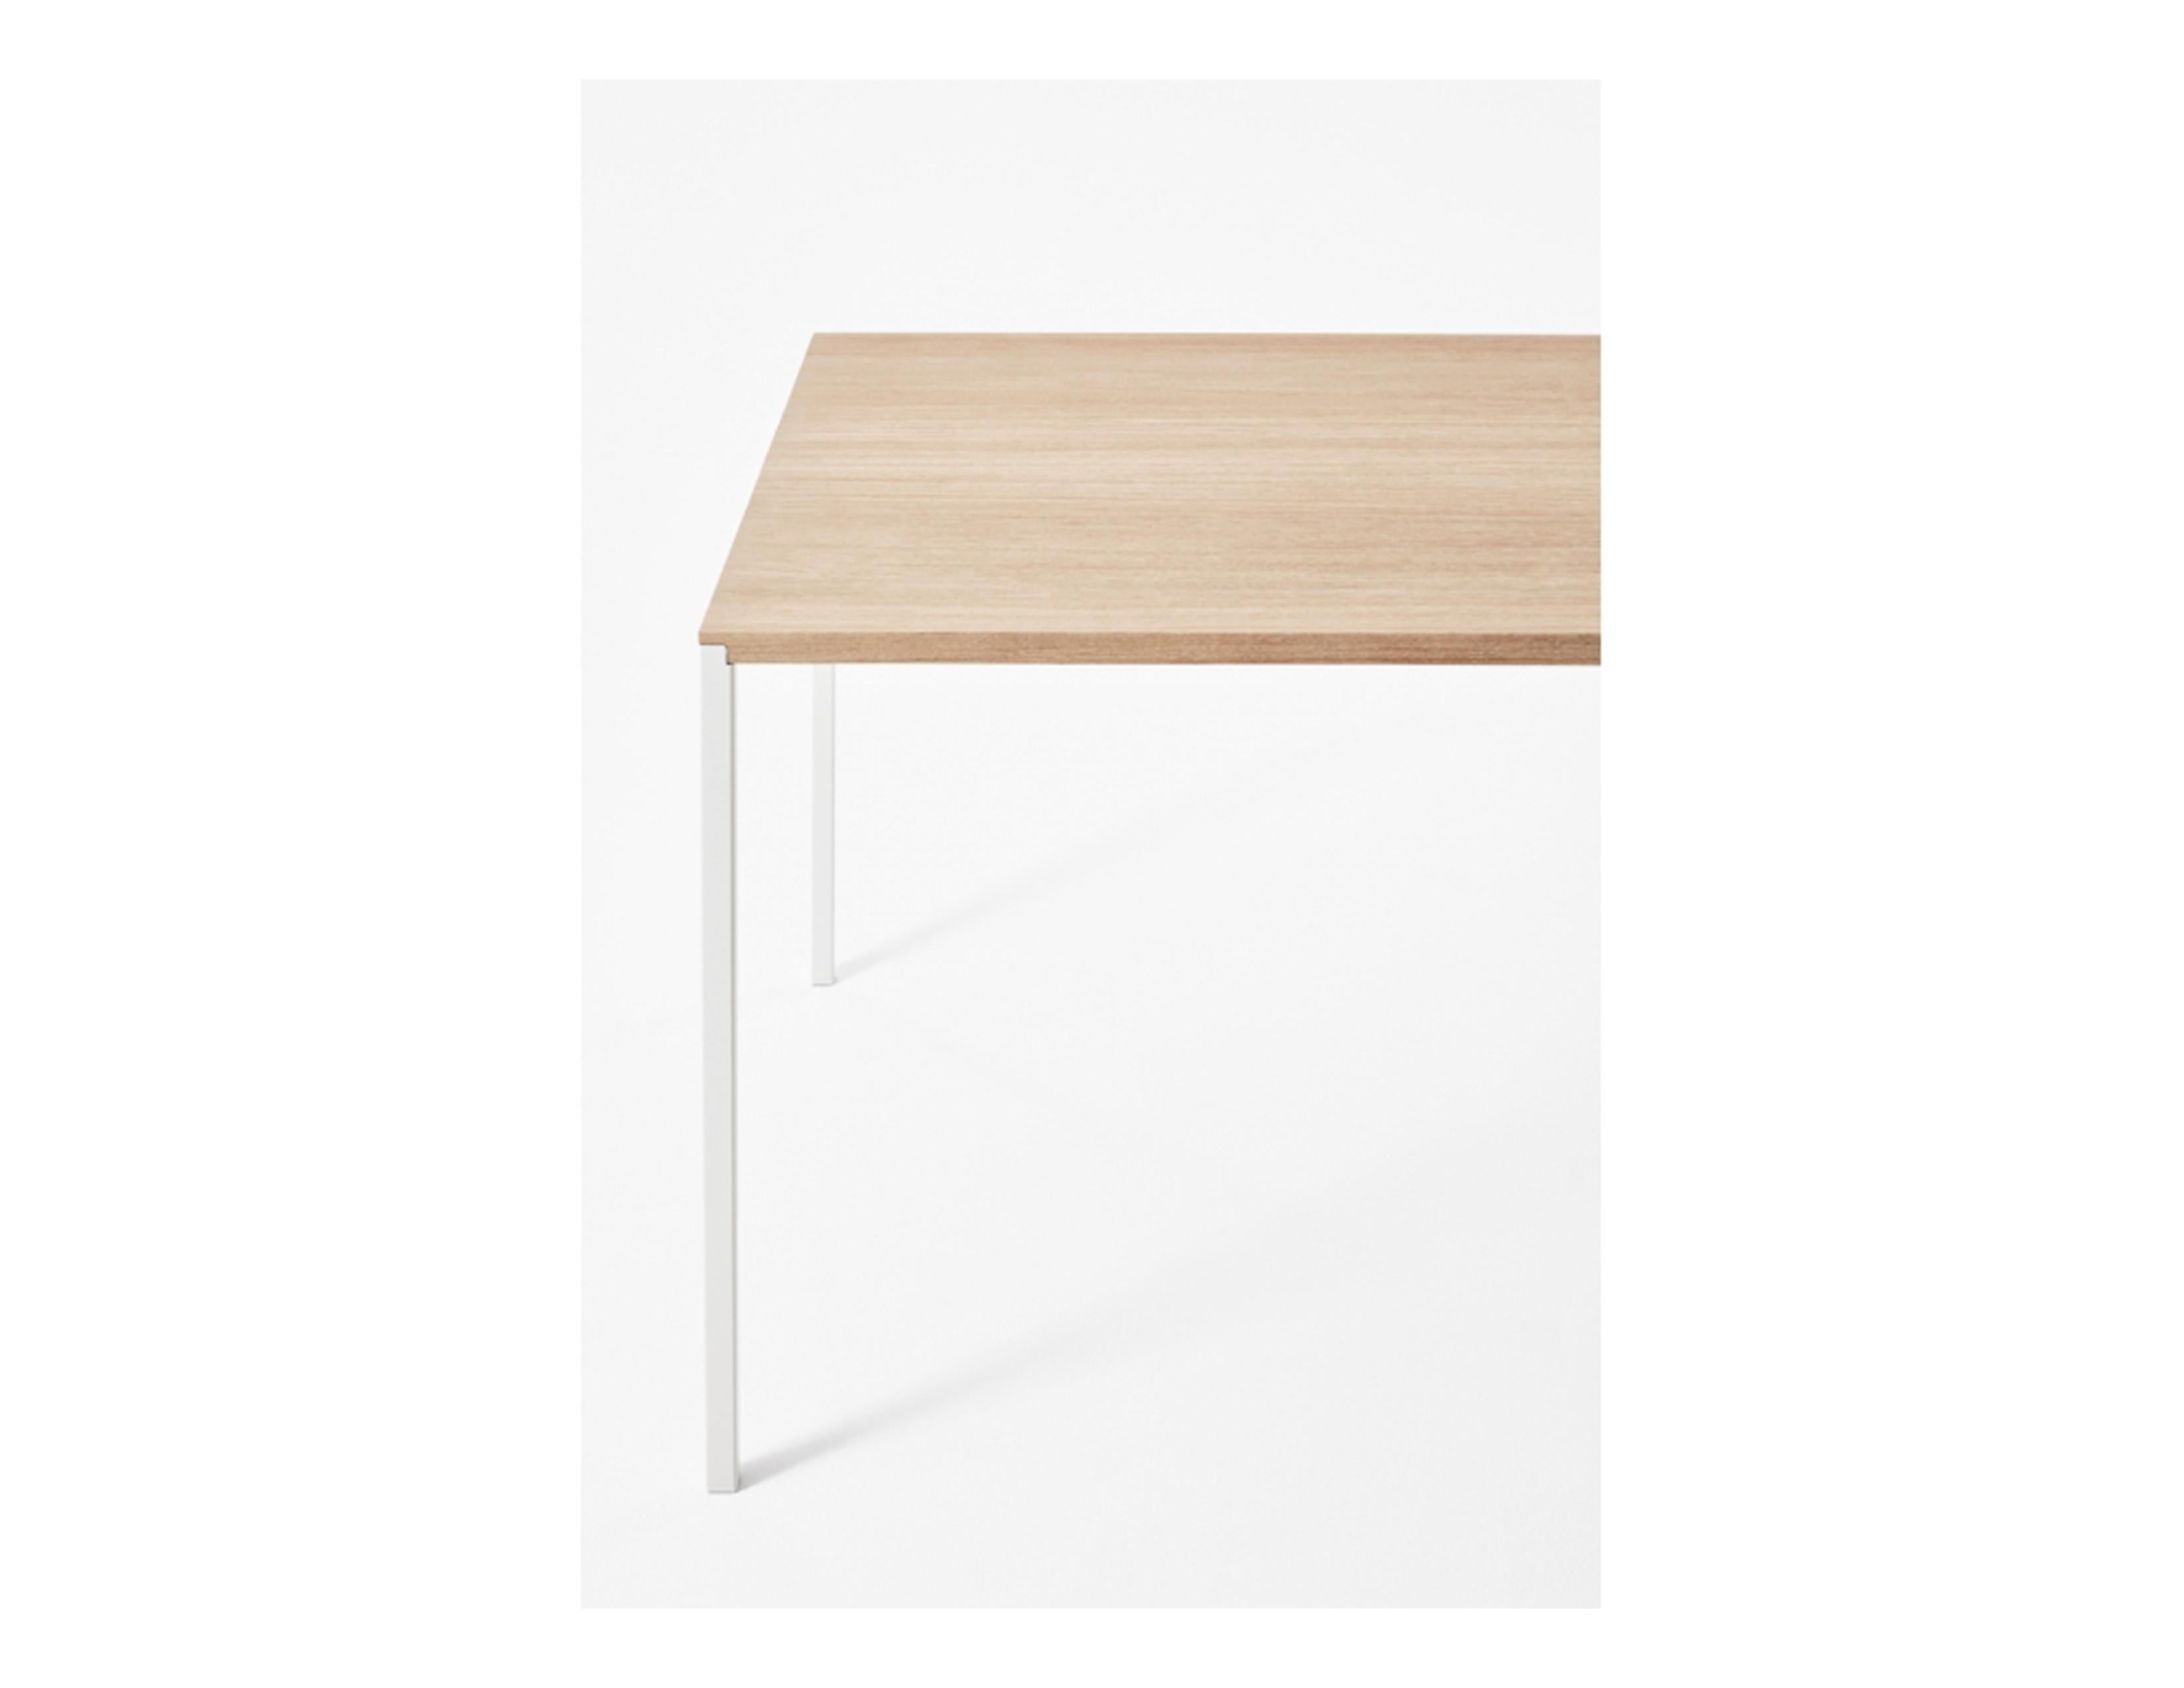 Customizable Desalto 25 Table by Metrica Bruno Fattorini & Robin Rizzini For Sale 3